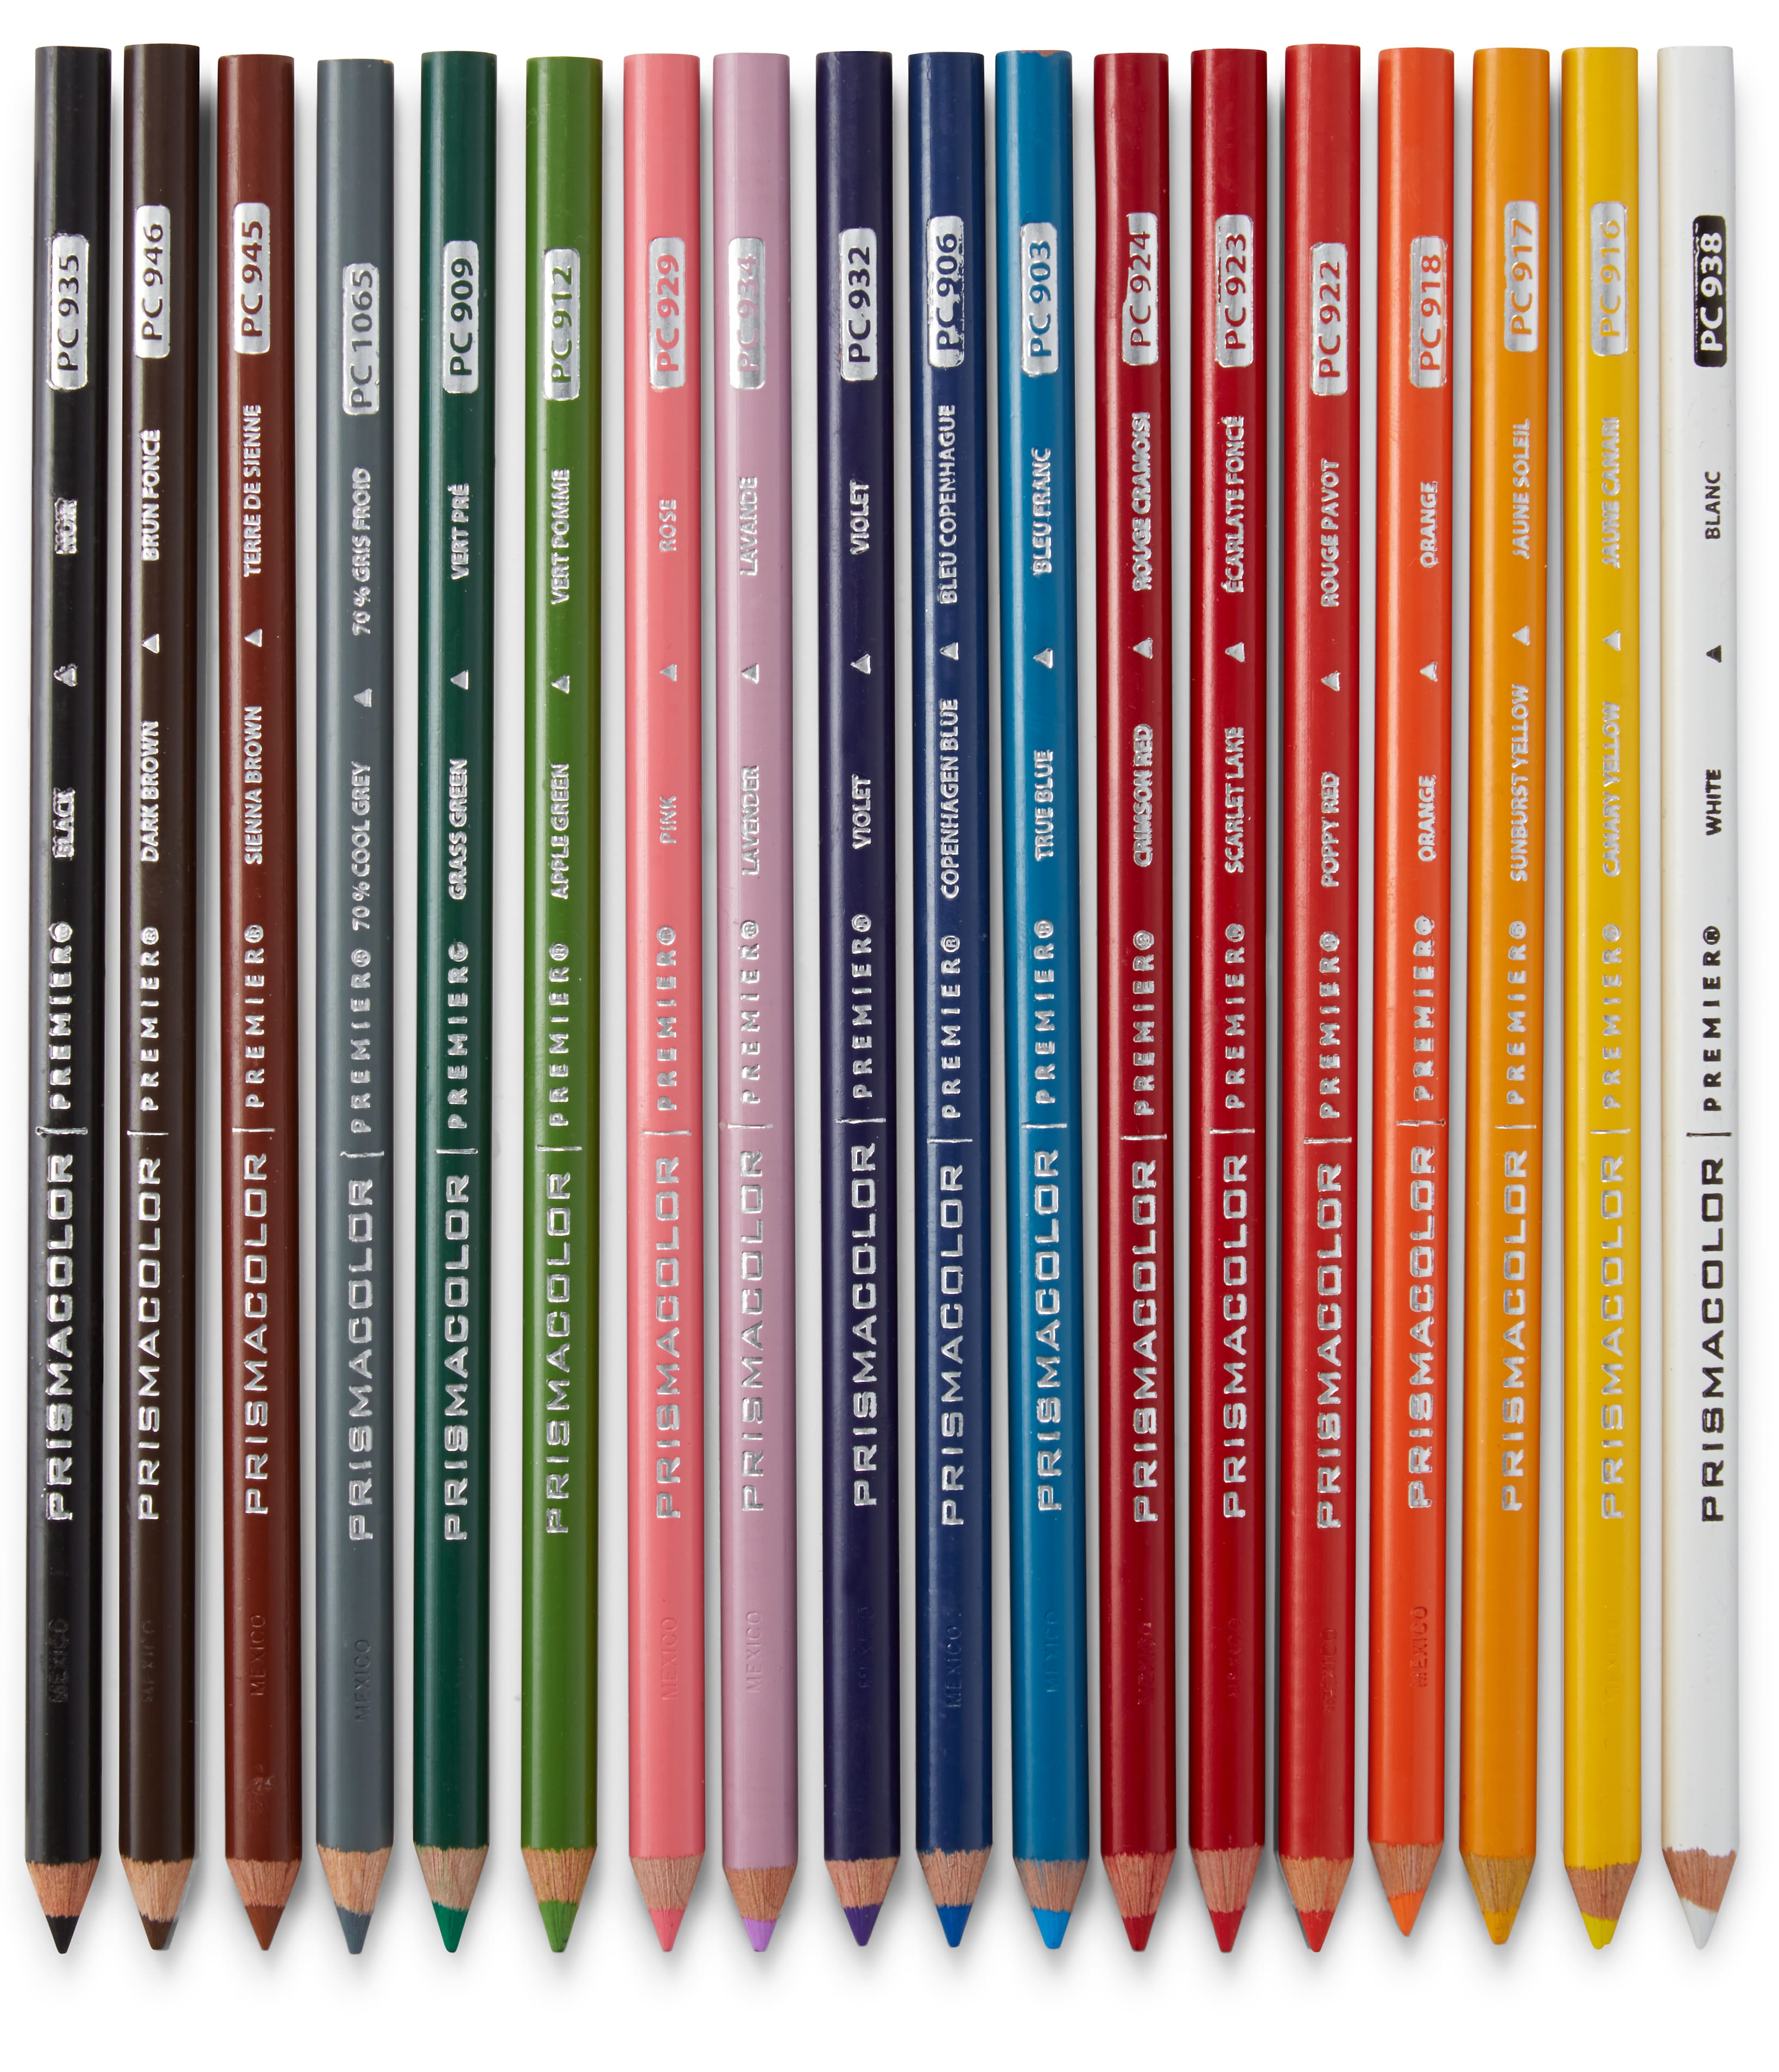 Prismacolor Premier Soft Core Colored Pencil, Set of 150 Assorted